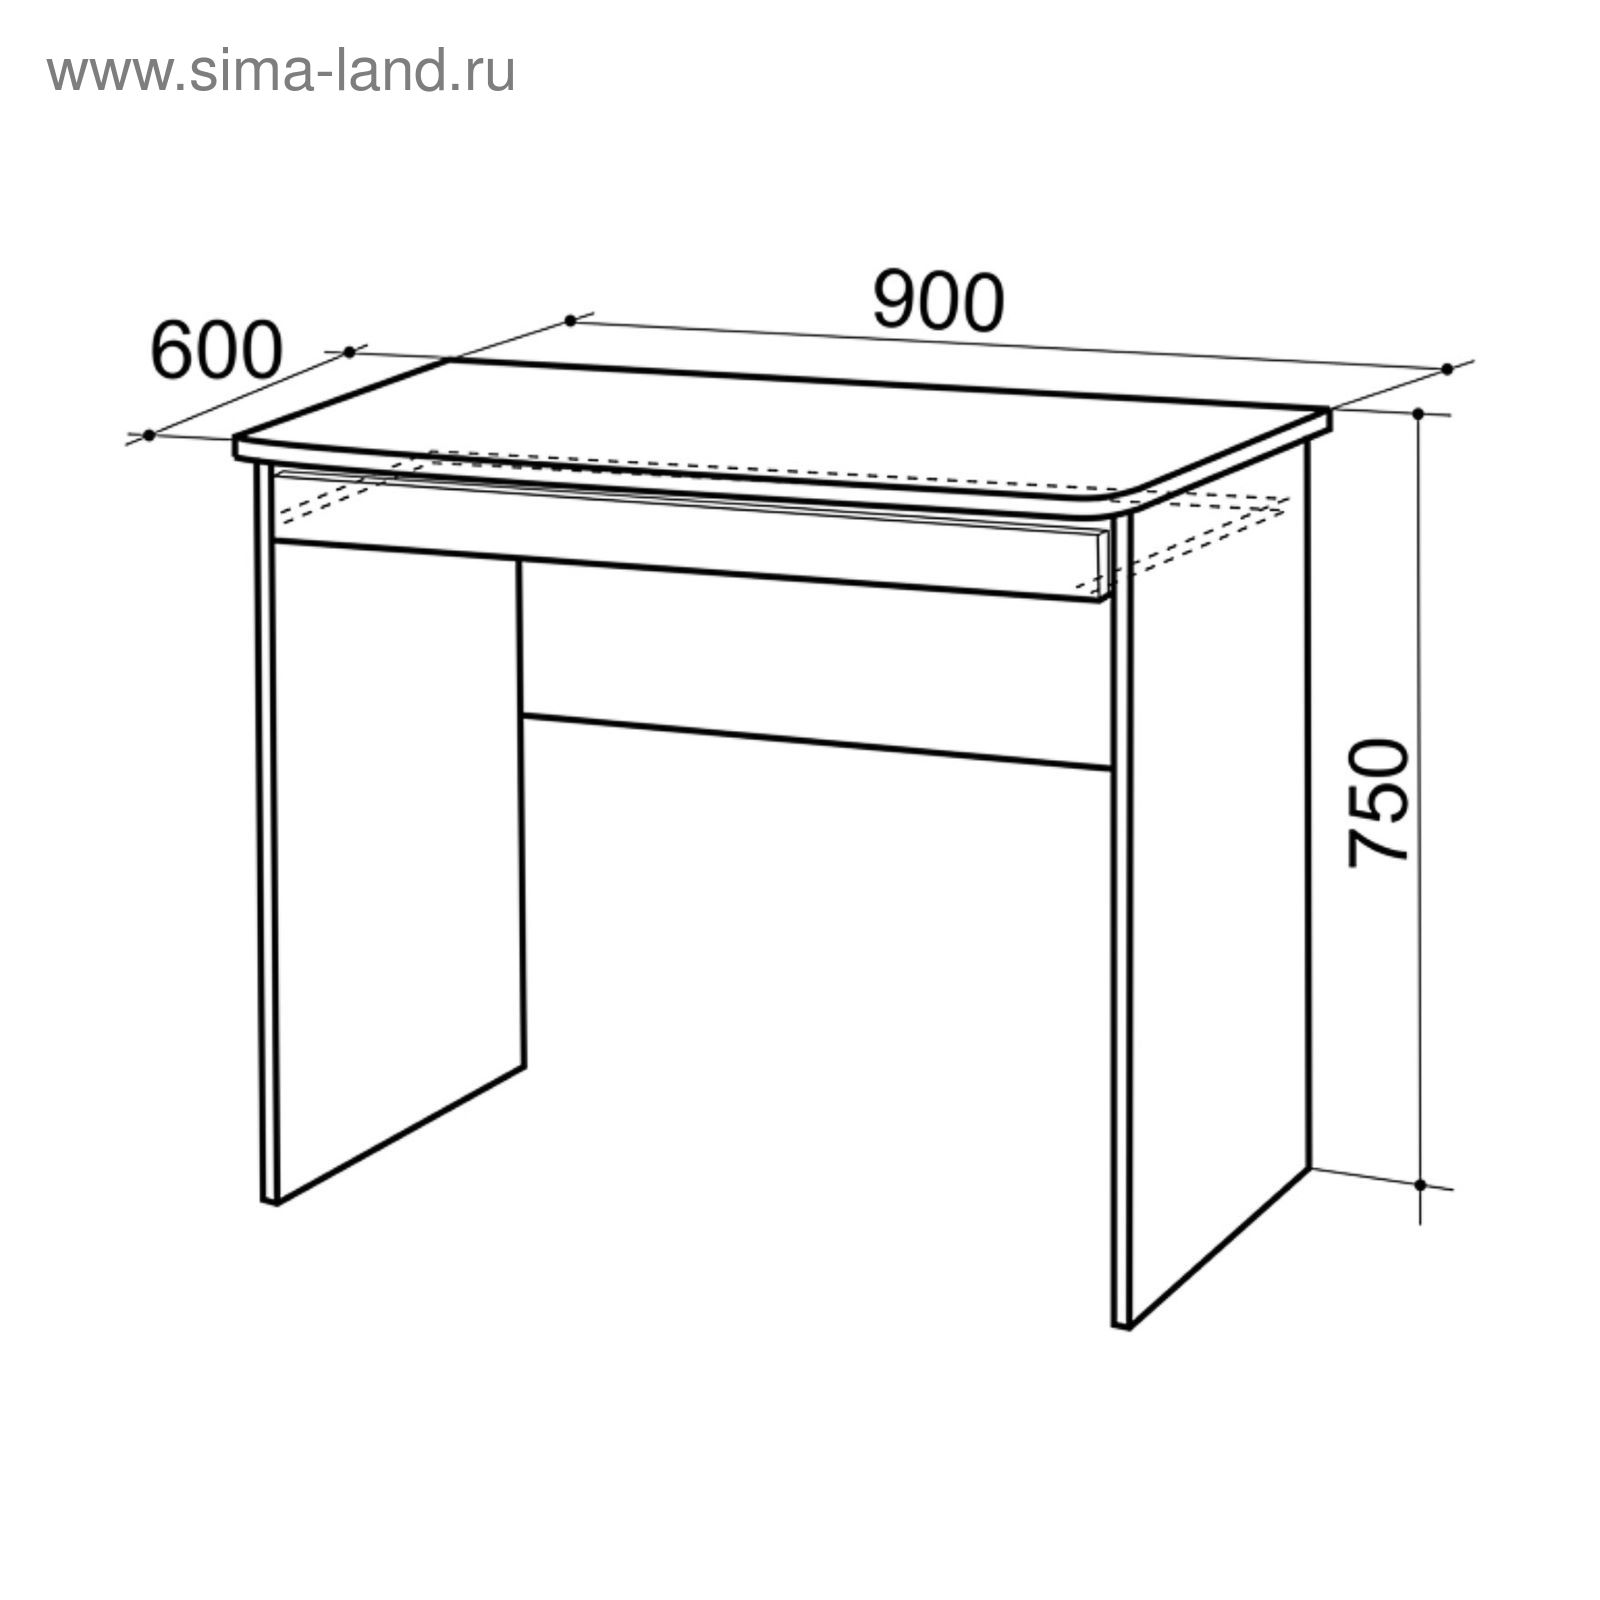 Размеры компьютерного стола для школьника